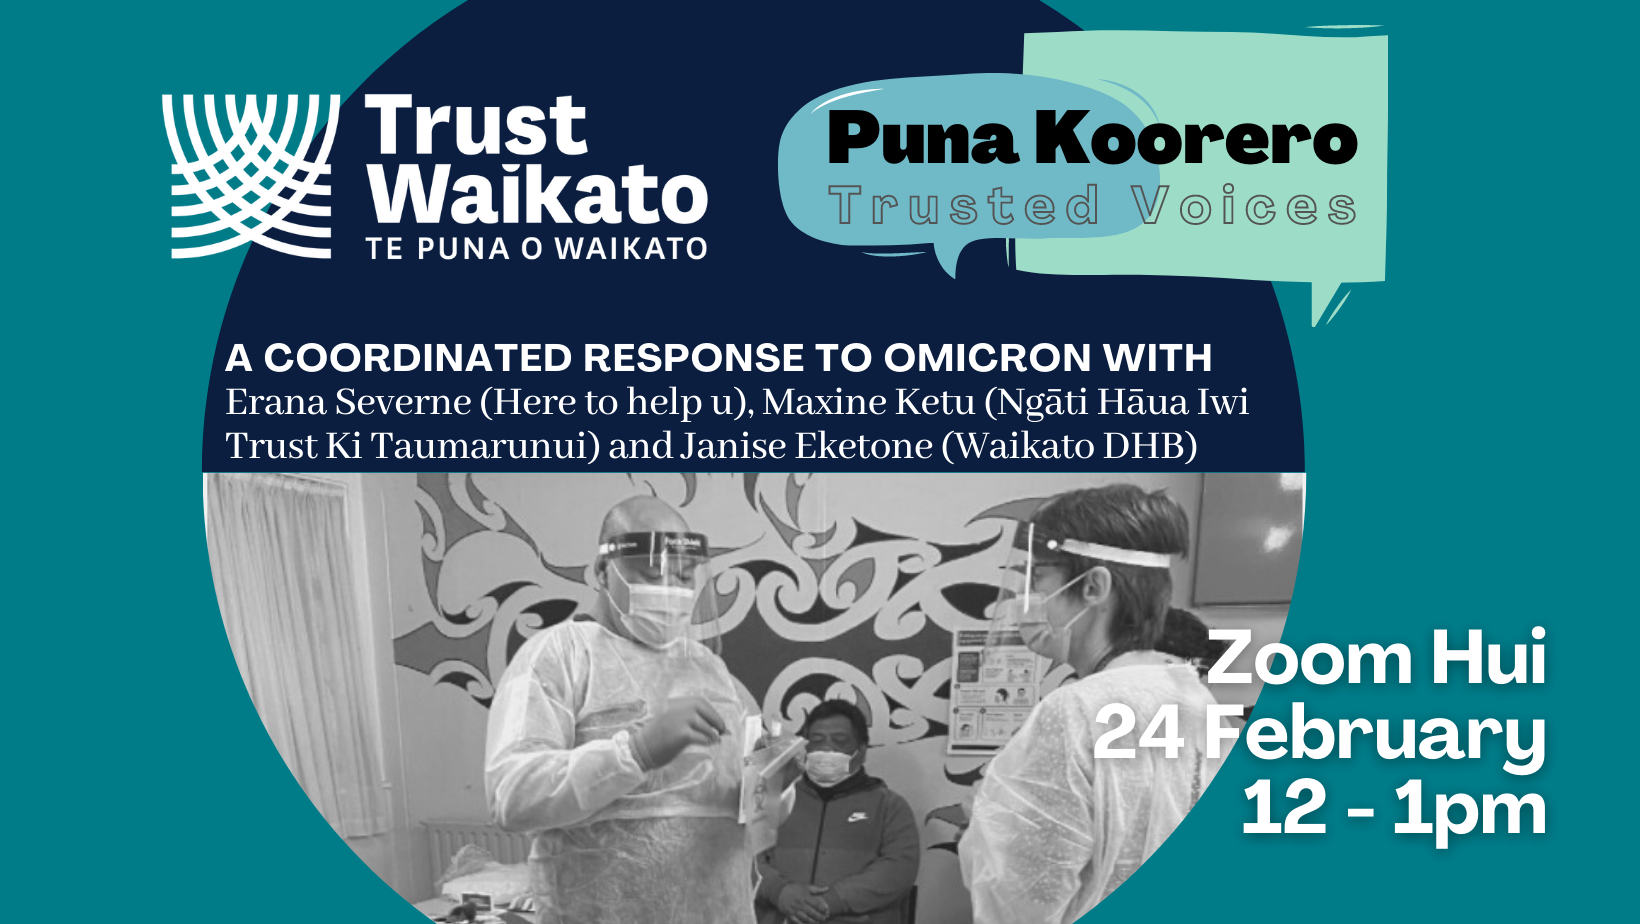 Puna Koorero - A coordinated response to Omicron with Erana Severne (Here to help u), Maxine Ketu (Ngaati Haaua Iwi Trust Ki Taumarunui), and Janise Eketone (Waikato DHB). Zoom Hui 24 February 12-1pm.